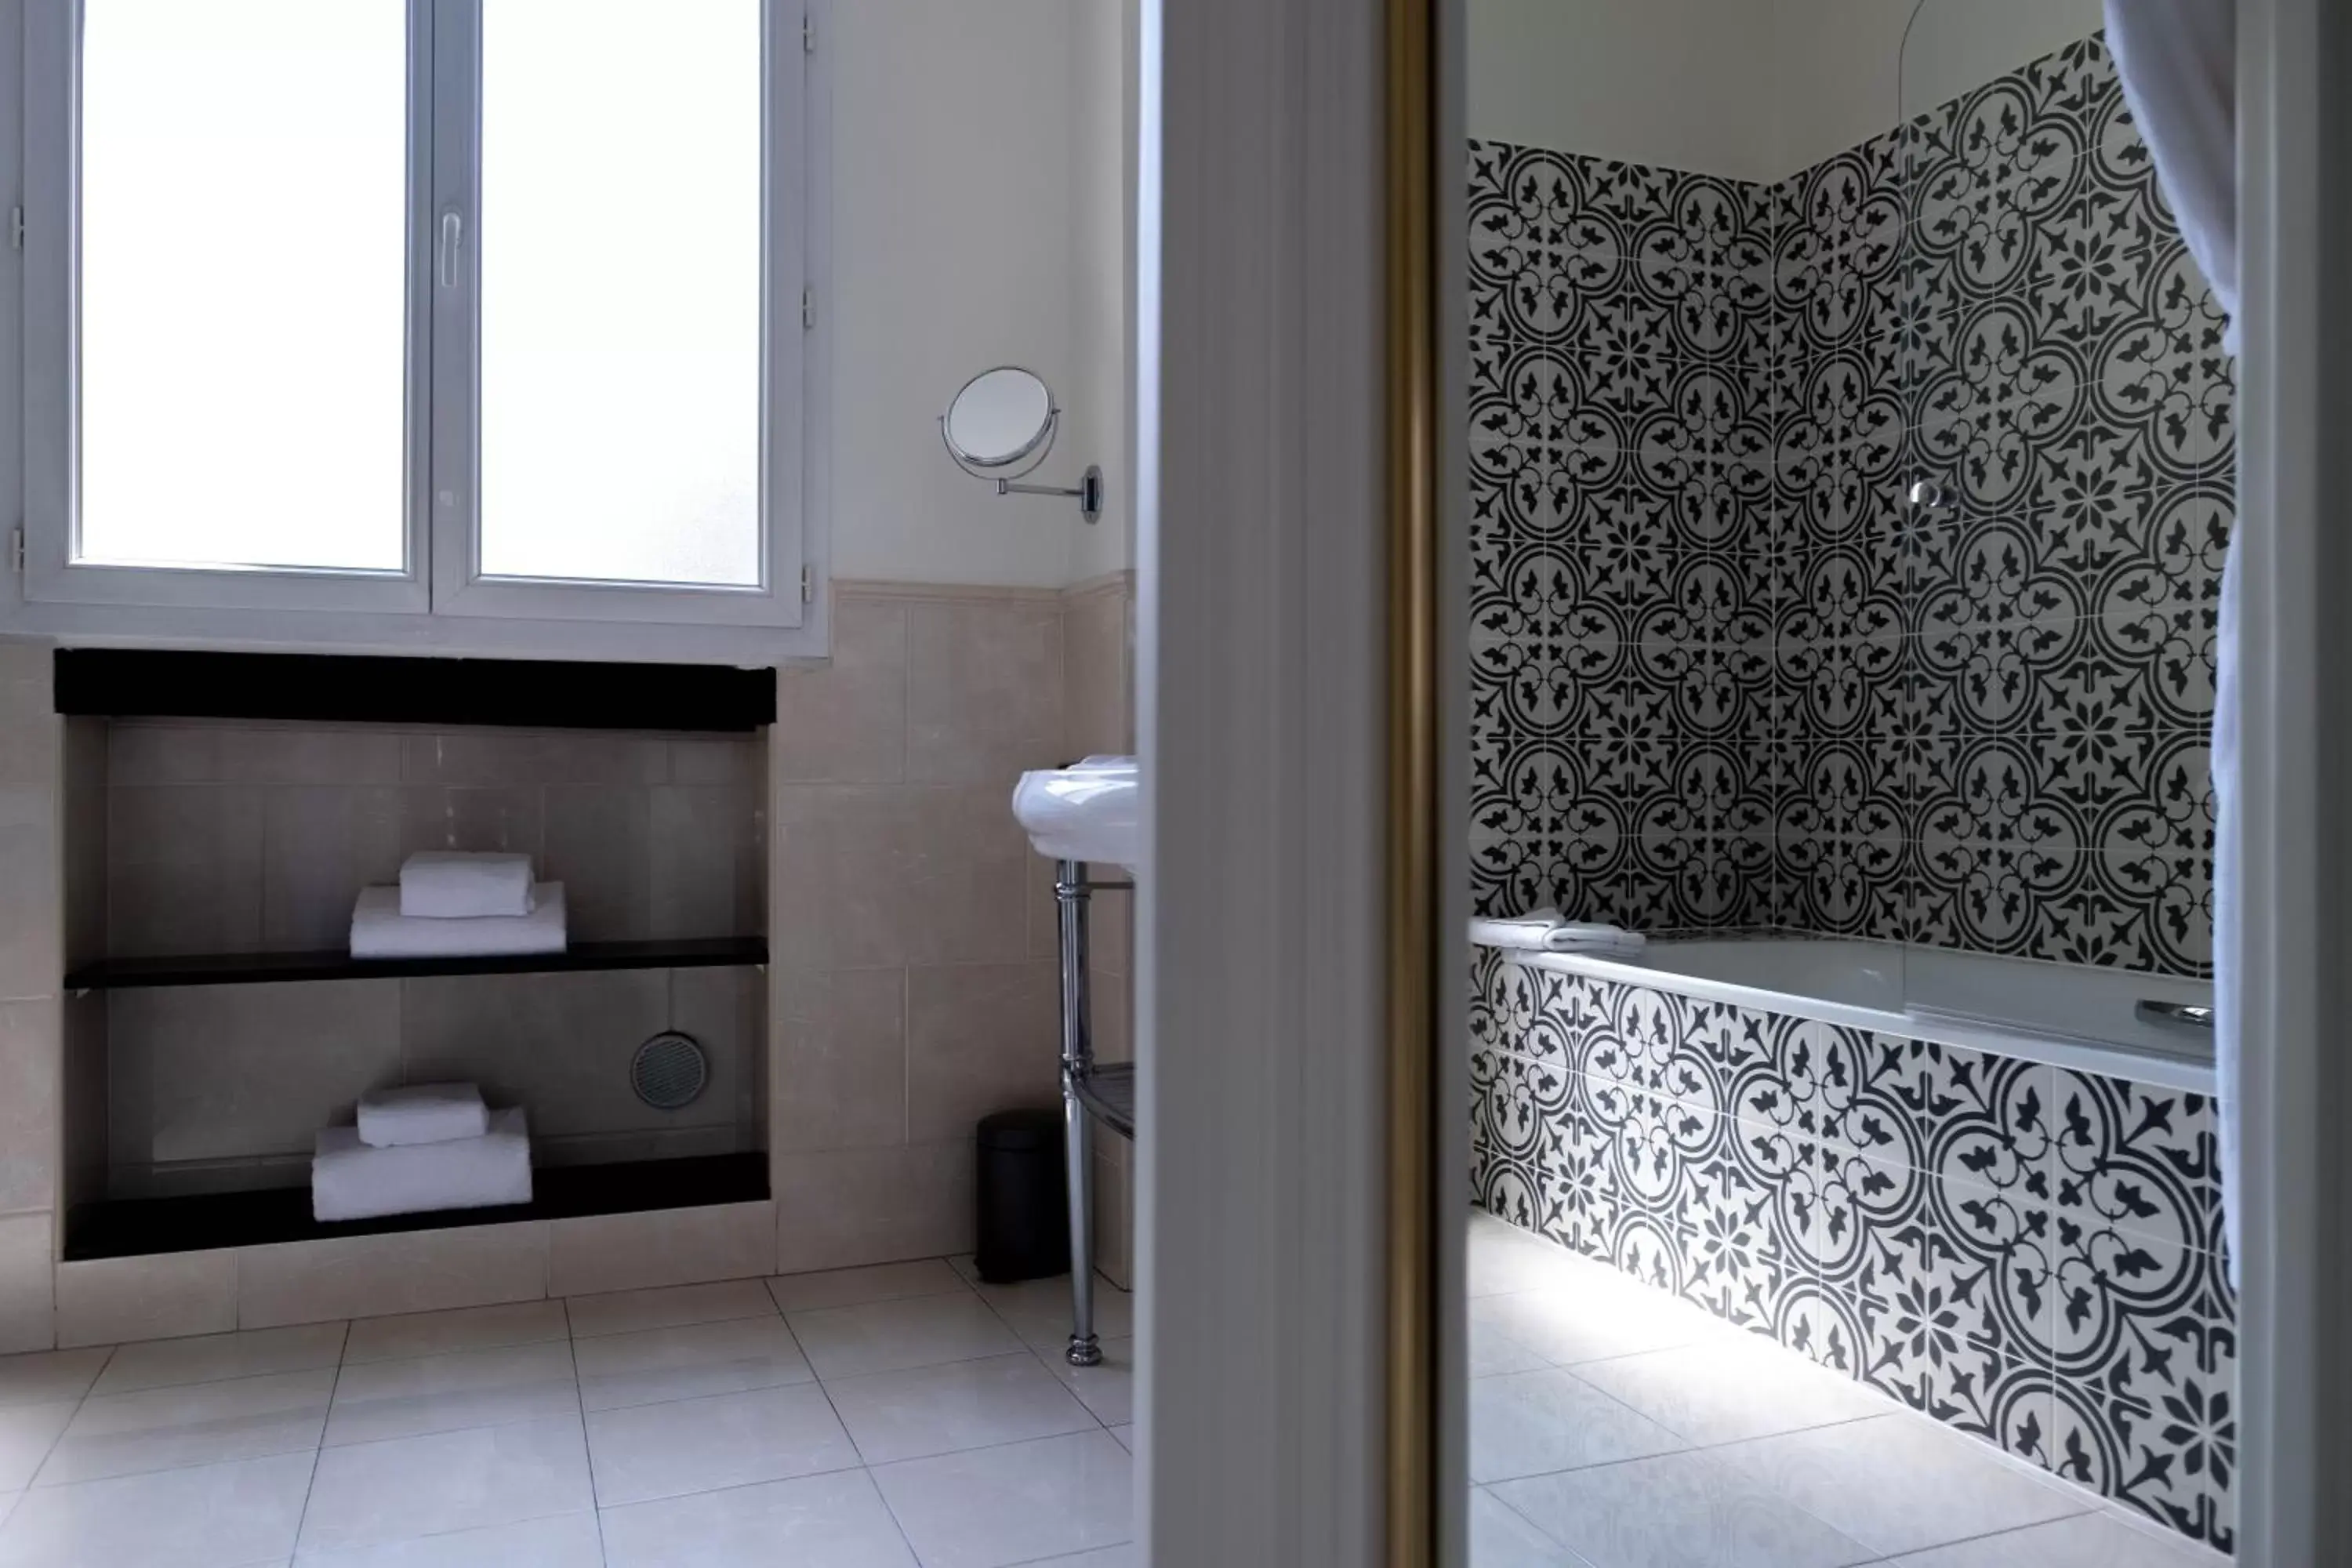 Bathroom in Hotel Claridge Paris